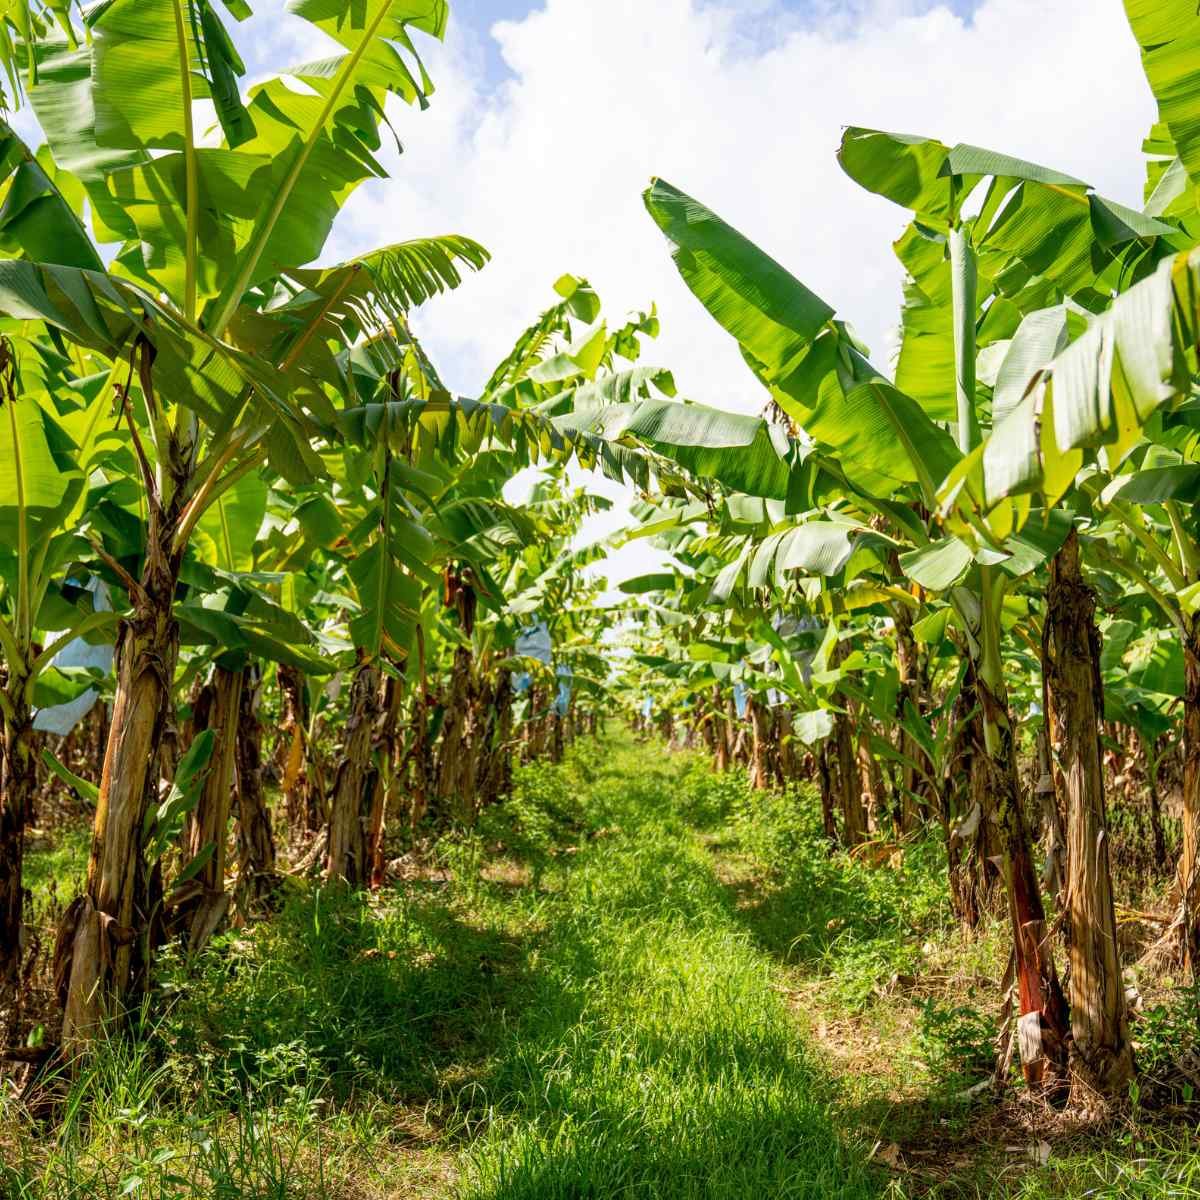 A vertical shot of a banana plantation.